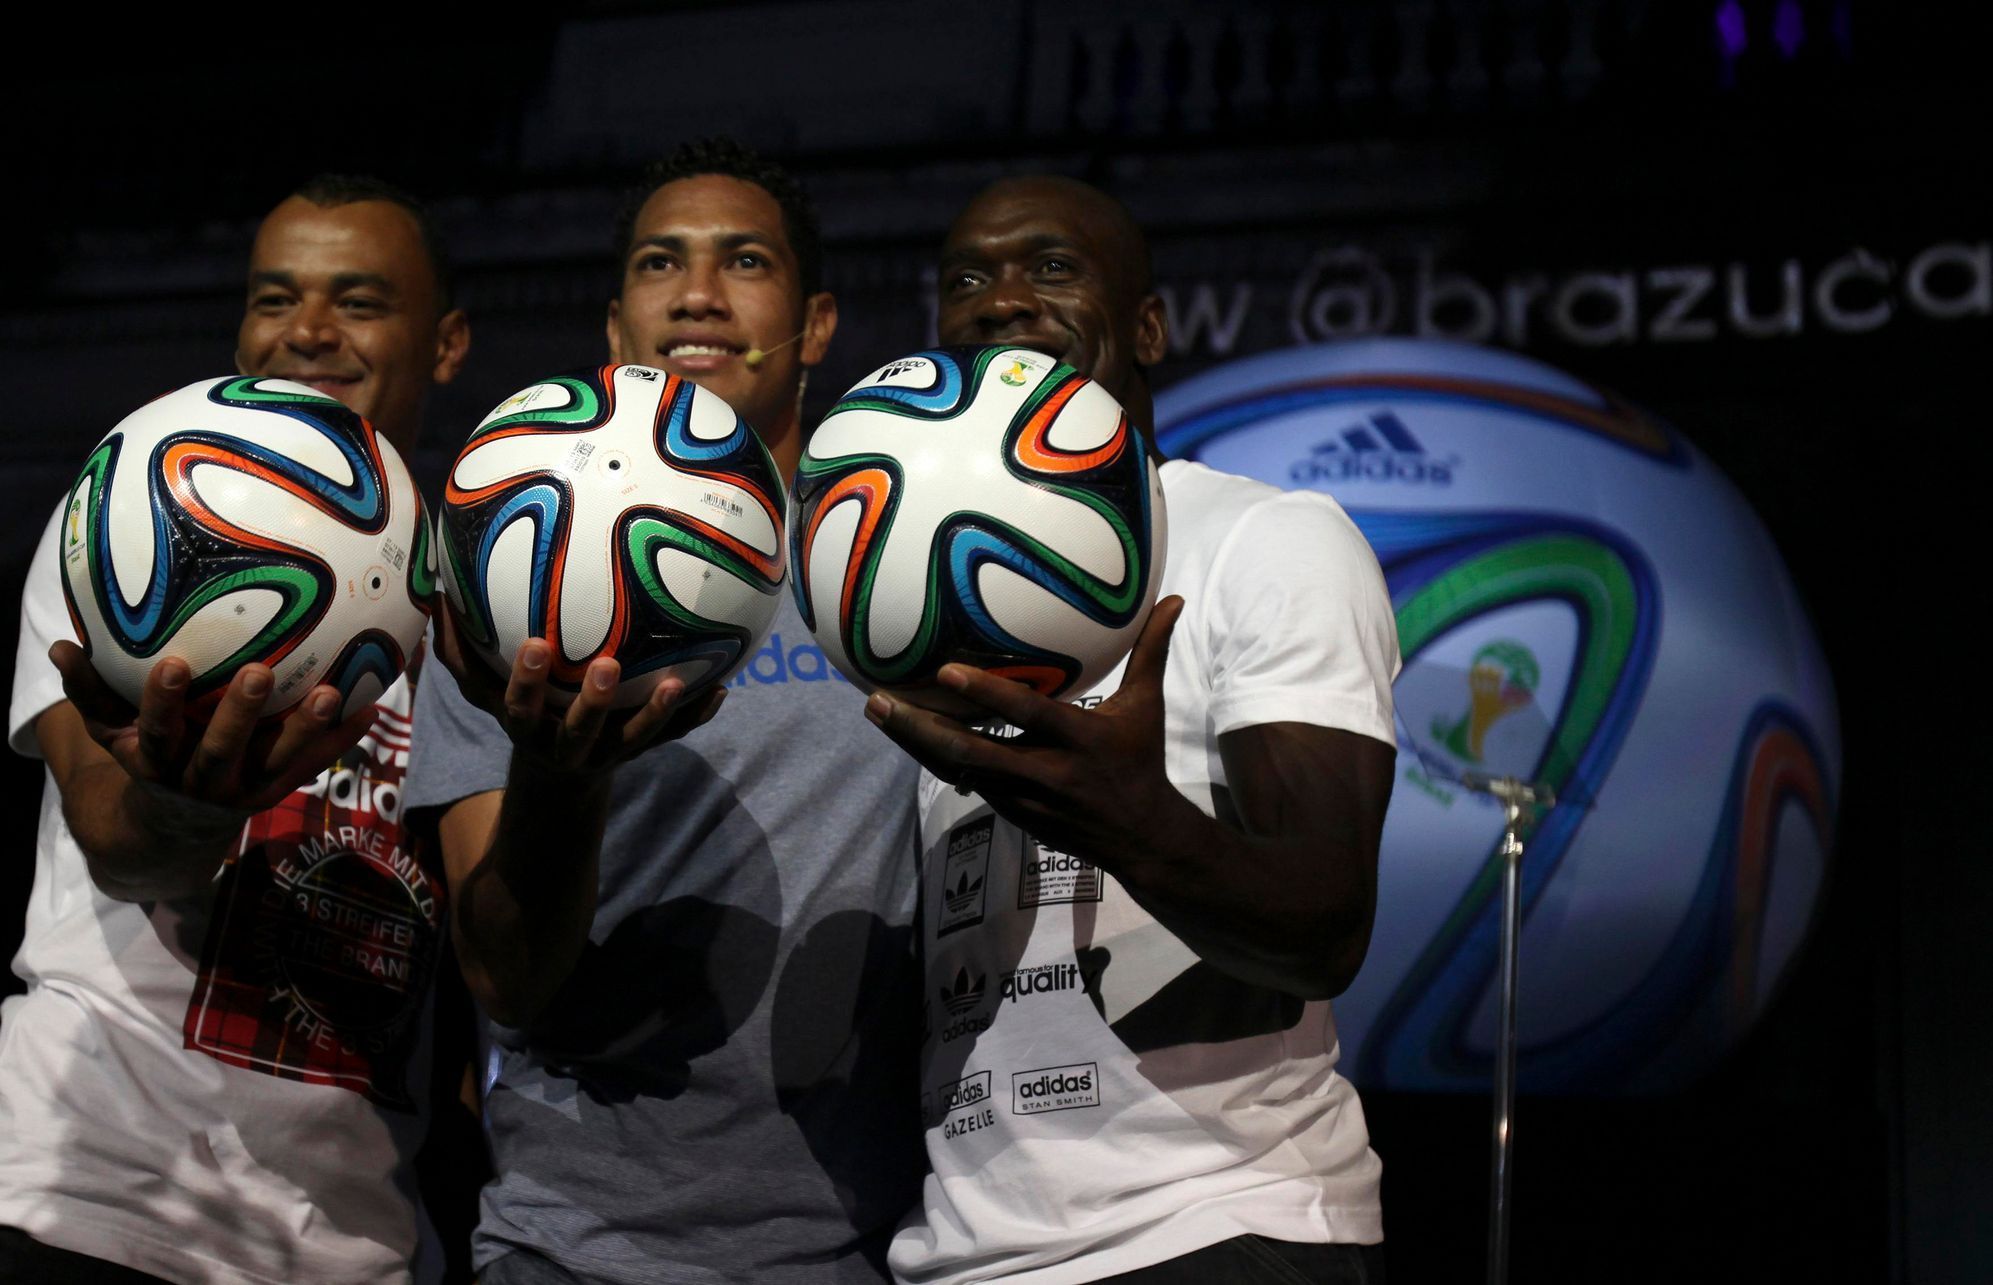 Adidas představil nový míč Brazuca pro MS ve fotbale 2014